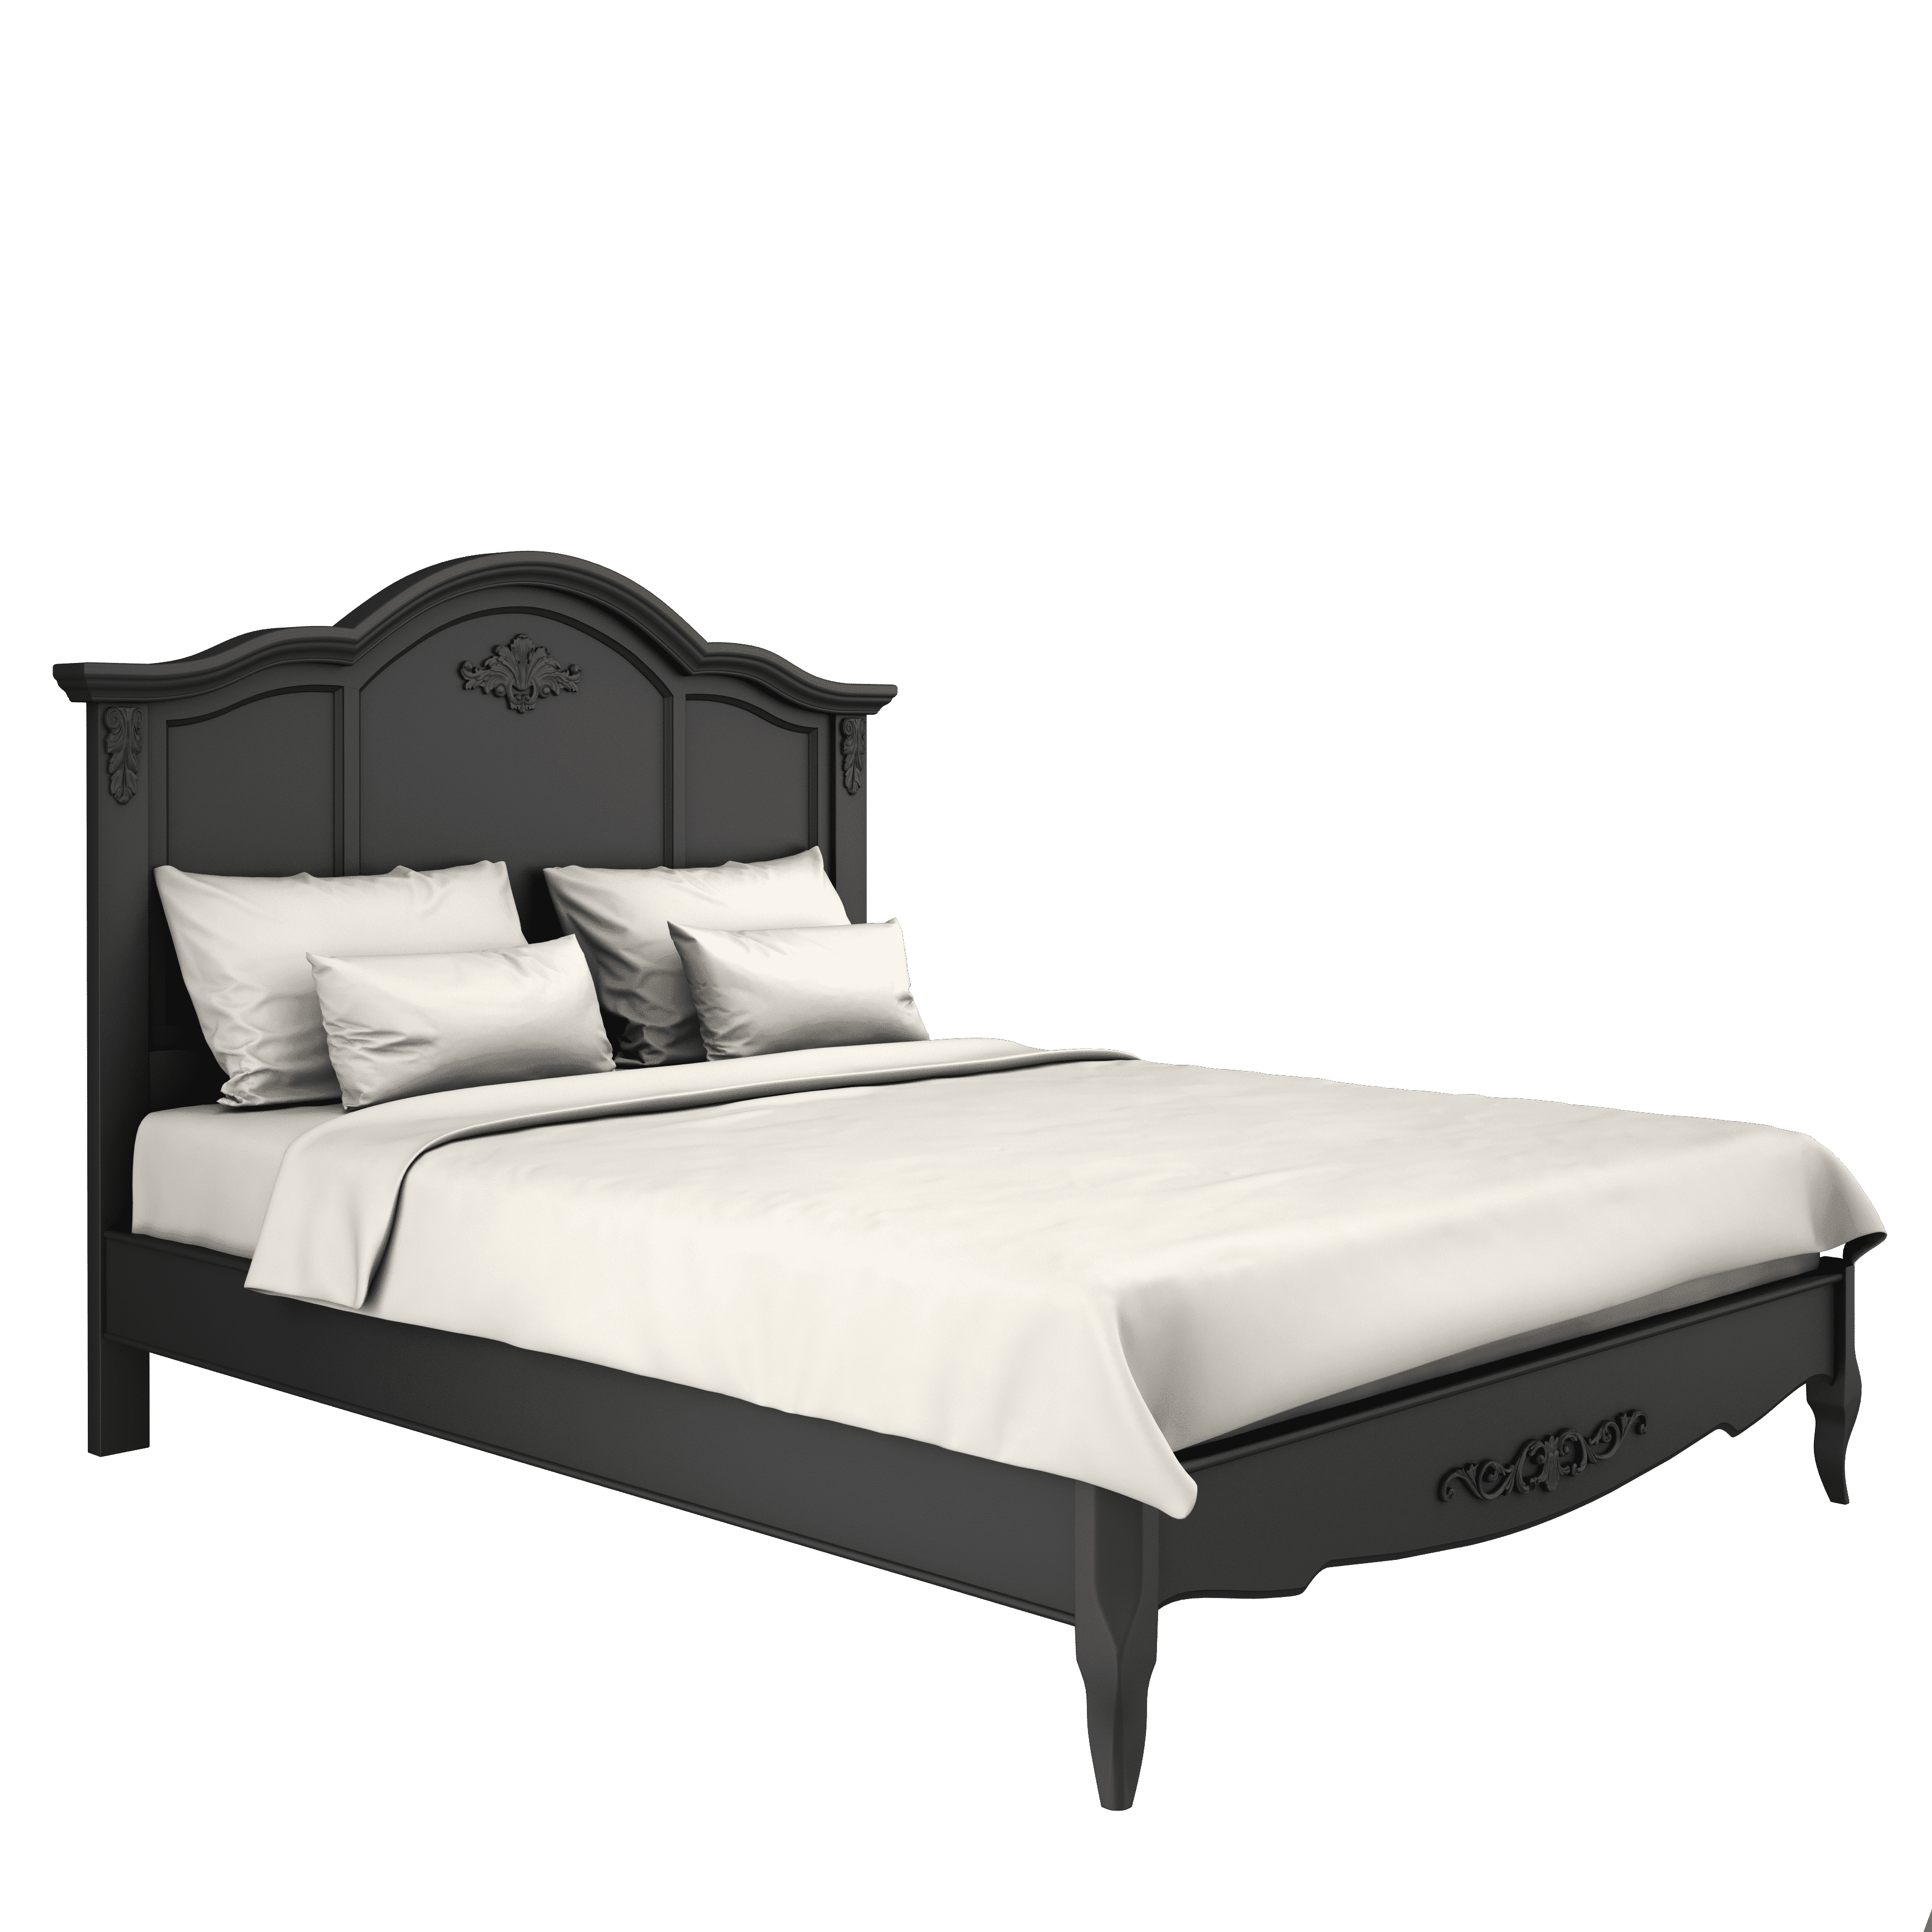 Кровать Aletan Provence, двуспальная, 160x200 см, цвет: черный (B206BL)B206BL